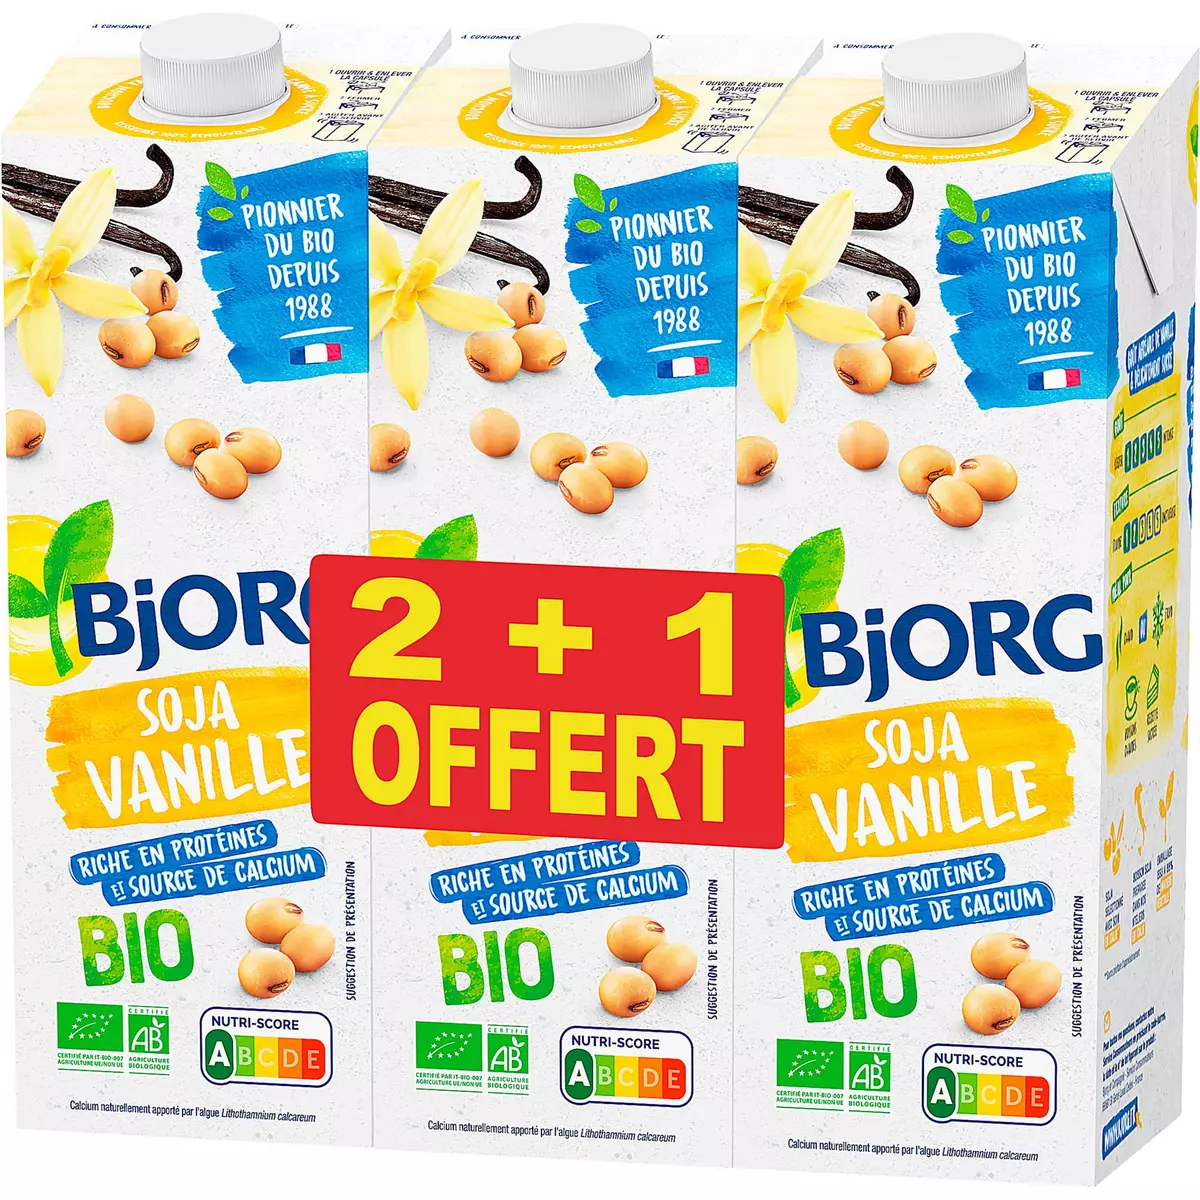 Auchan Bio boisson soja vanille 1L